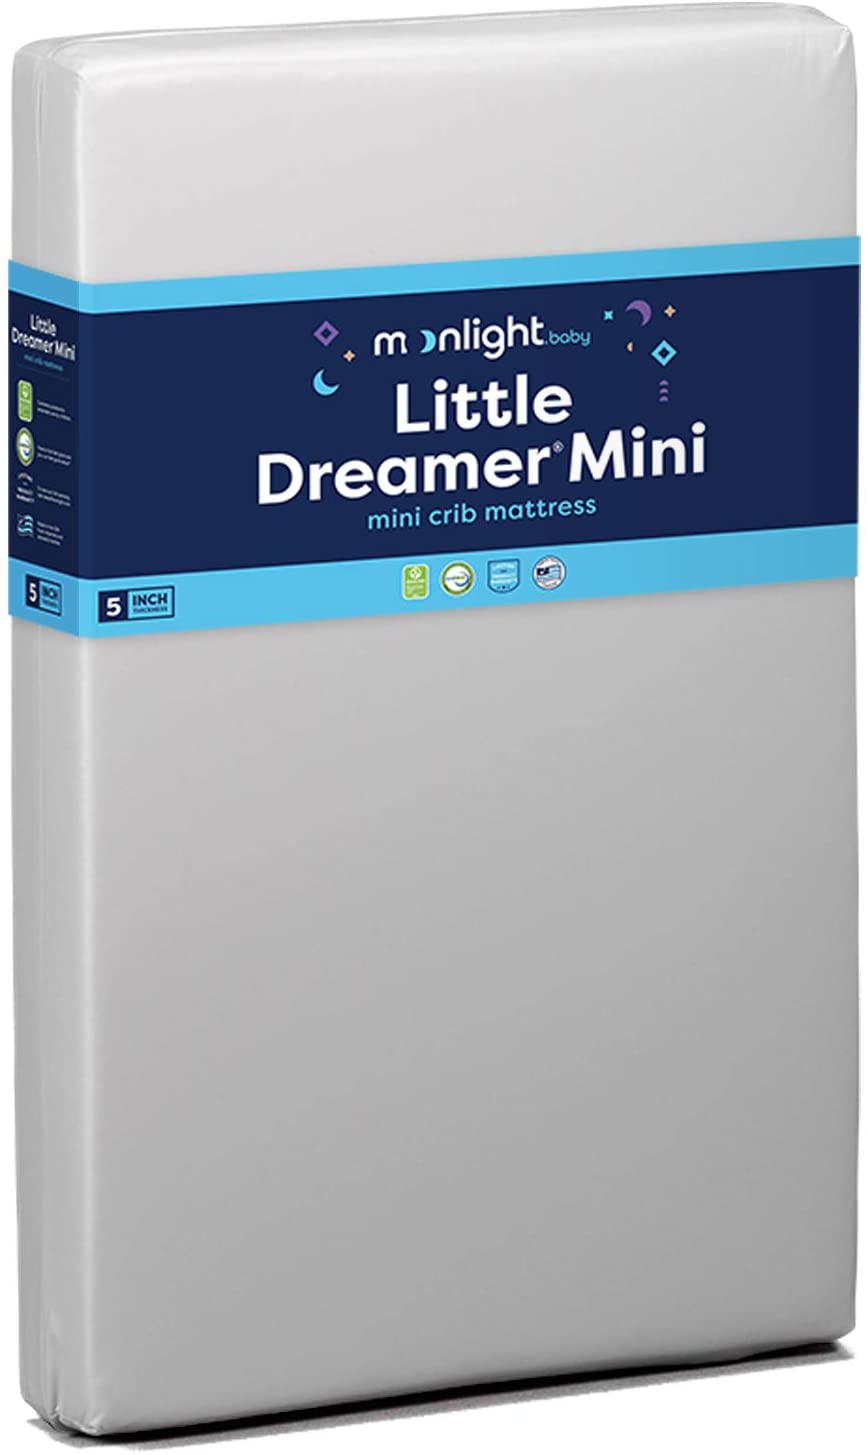 Little Dreamer Mini Crib Mattress - Twinkle Twinkle Little One